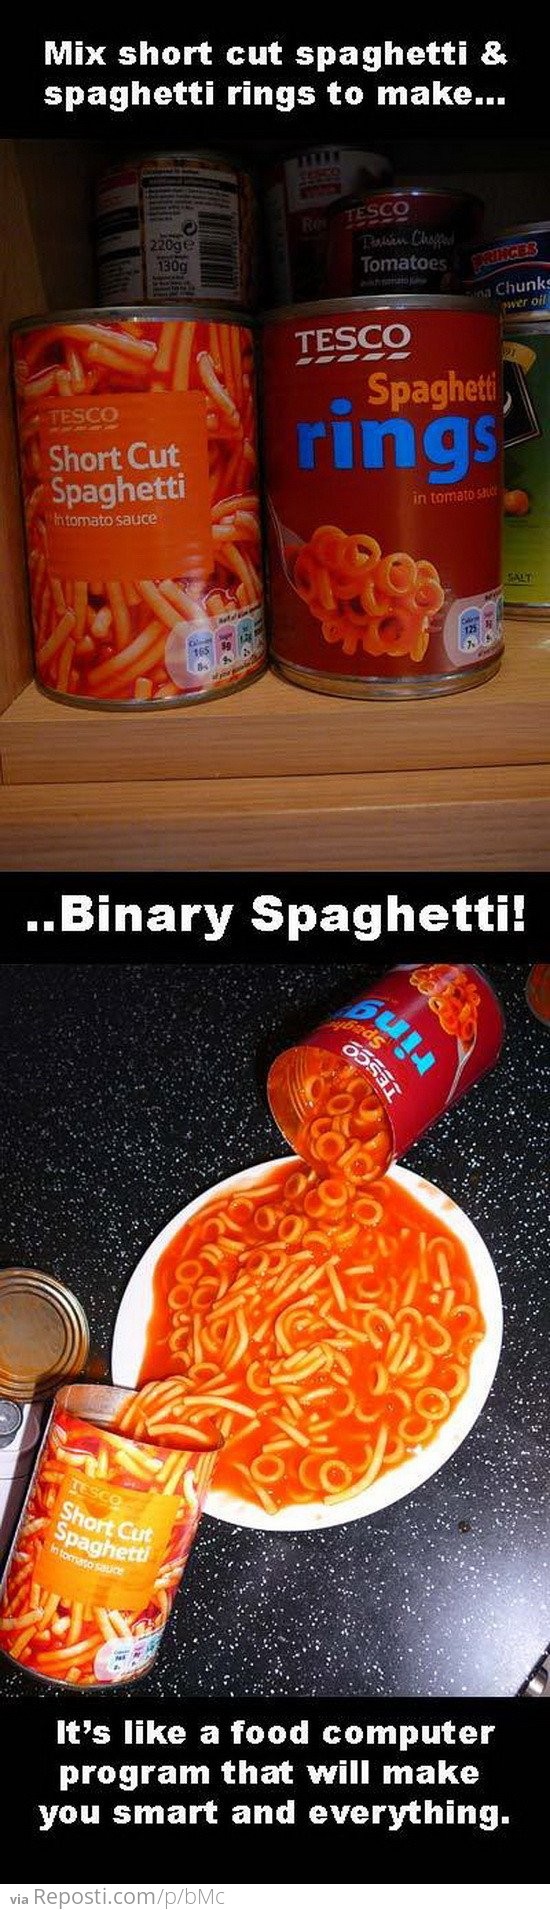 Mixing Spaghetti